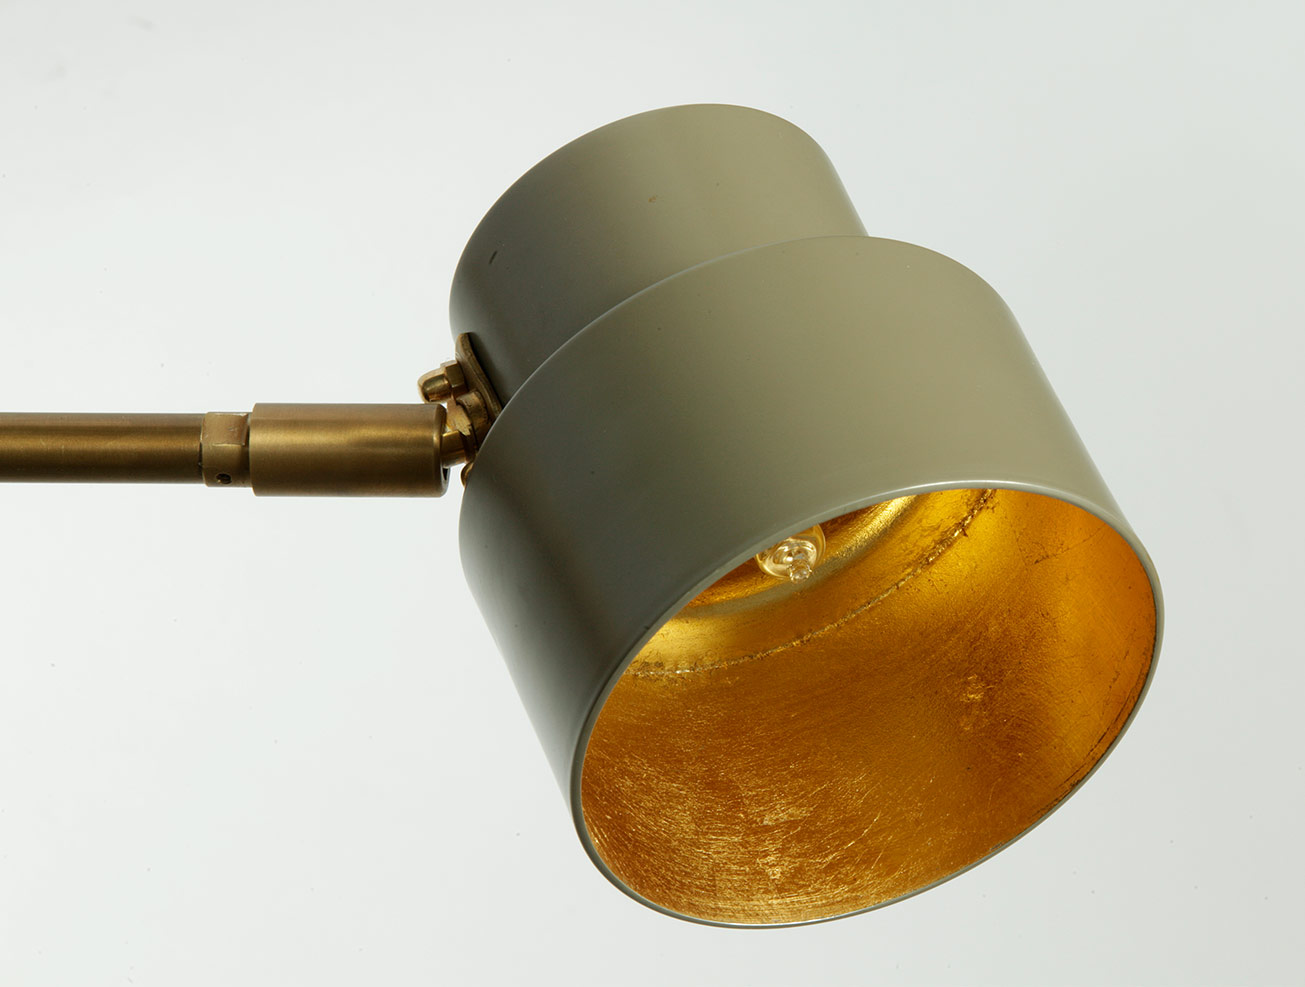 Mid Century Design-Wandleuchte mit kurzen Arm (drei Größen): Schirm des kleinen Modells Ø 10 cm in beige-grau (RAL 7006) mit Innenseite aus Blattgold